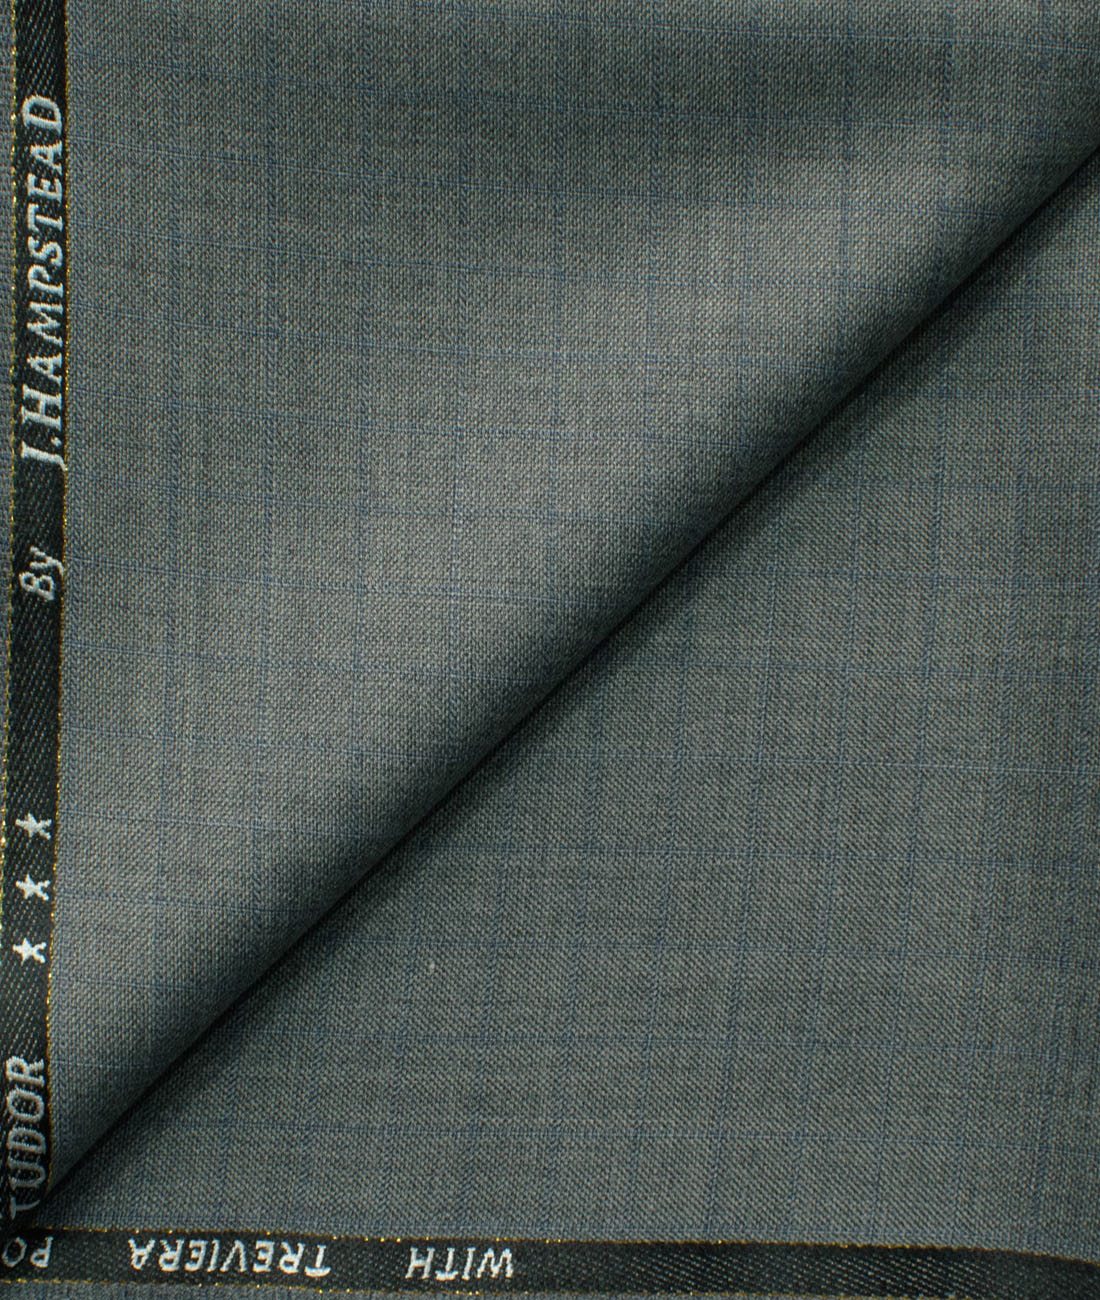 What is Strip Wool Trousers Fabric Woolen Yarn Tweed Fabric Wholesale  Italian Plaid Tweed Boiled Worsted 100 Merino